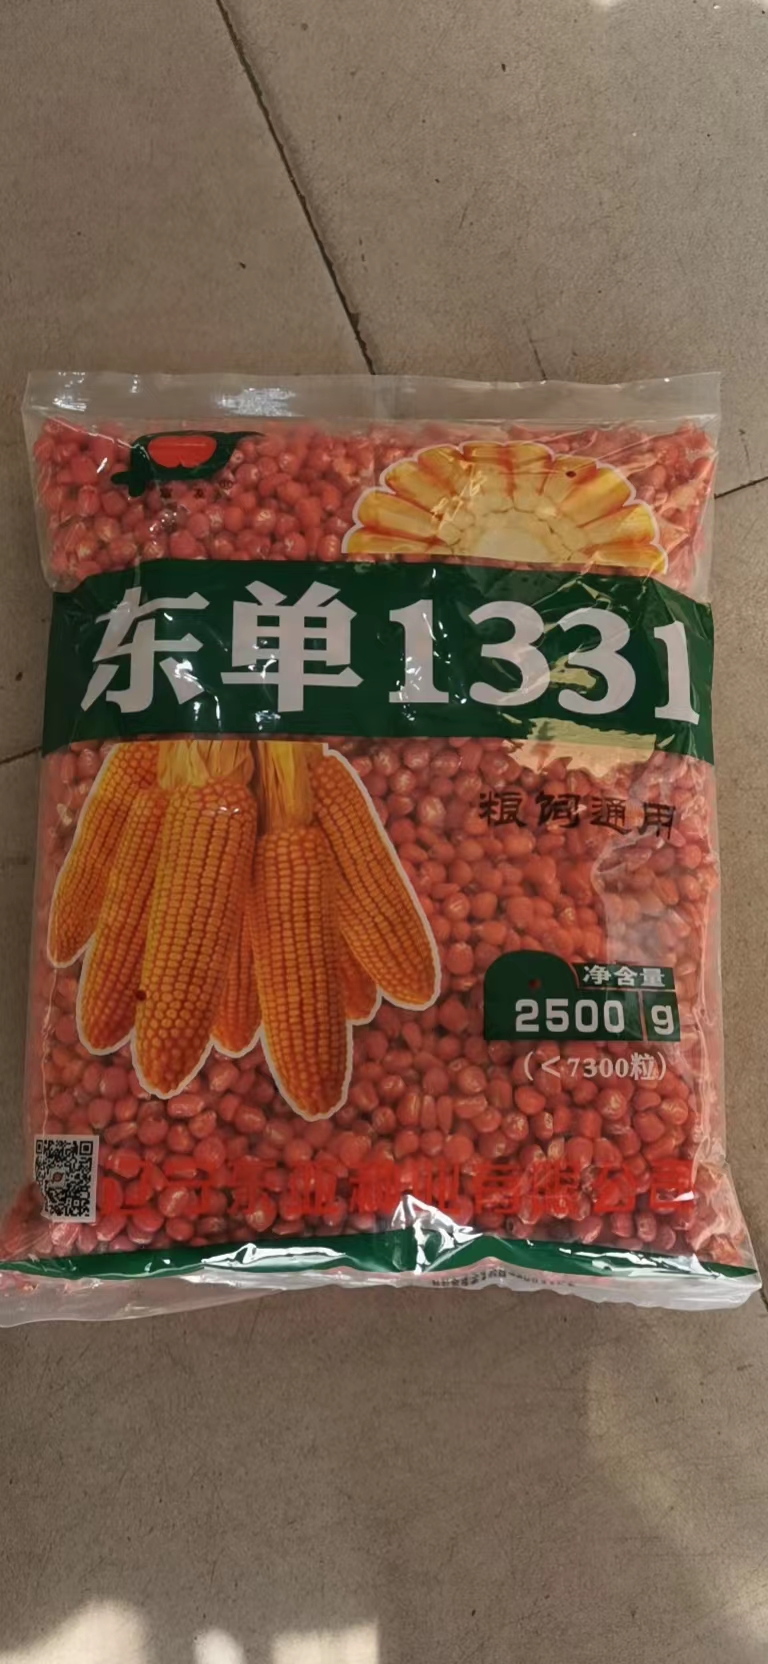 沈阳东单1331玉米种子，约7300粒2.5公斤包装